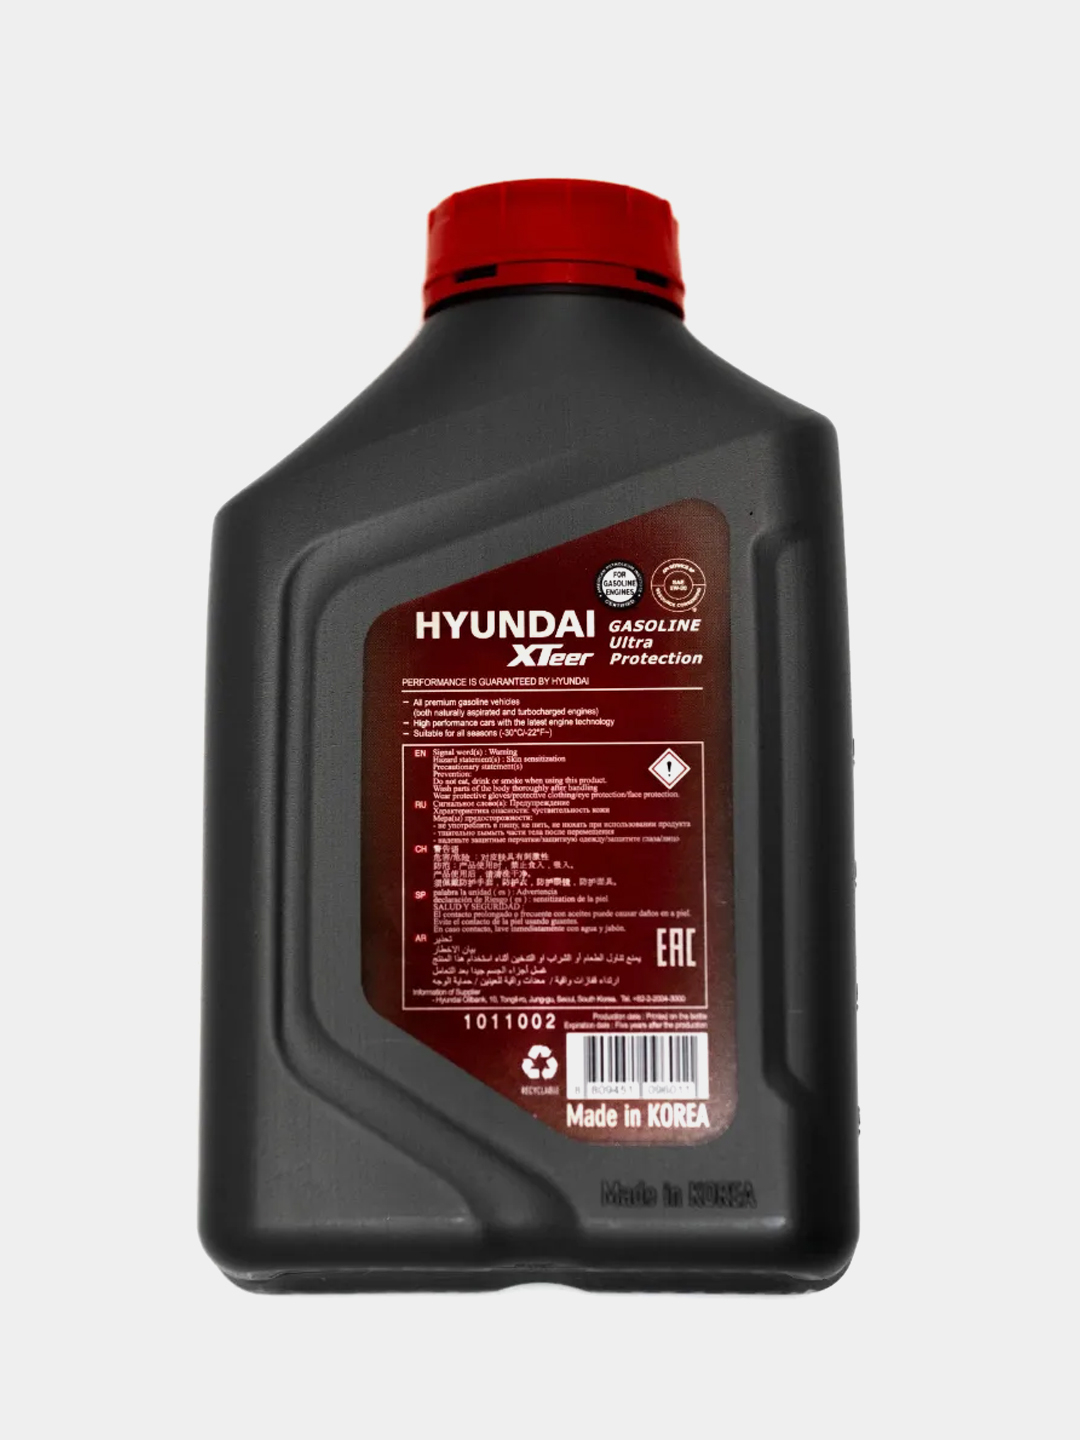 Hyundai xteer gasoline ultra 5w30